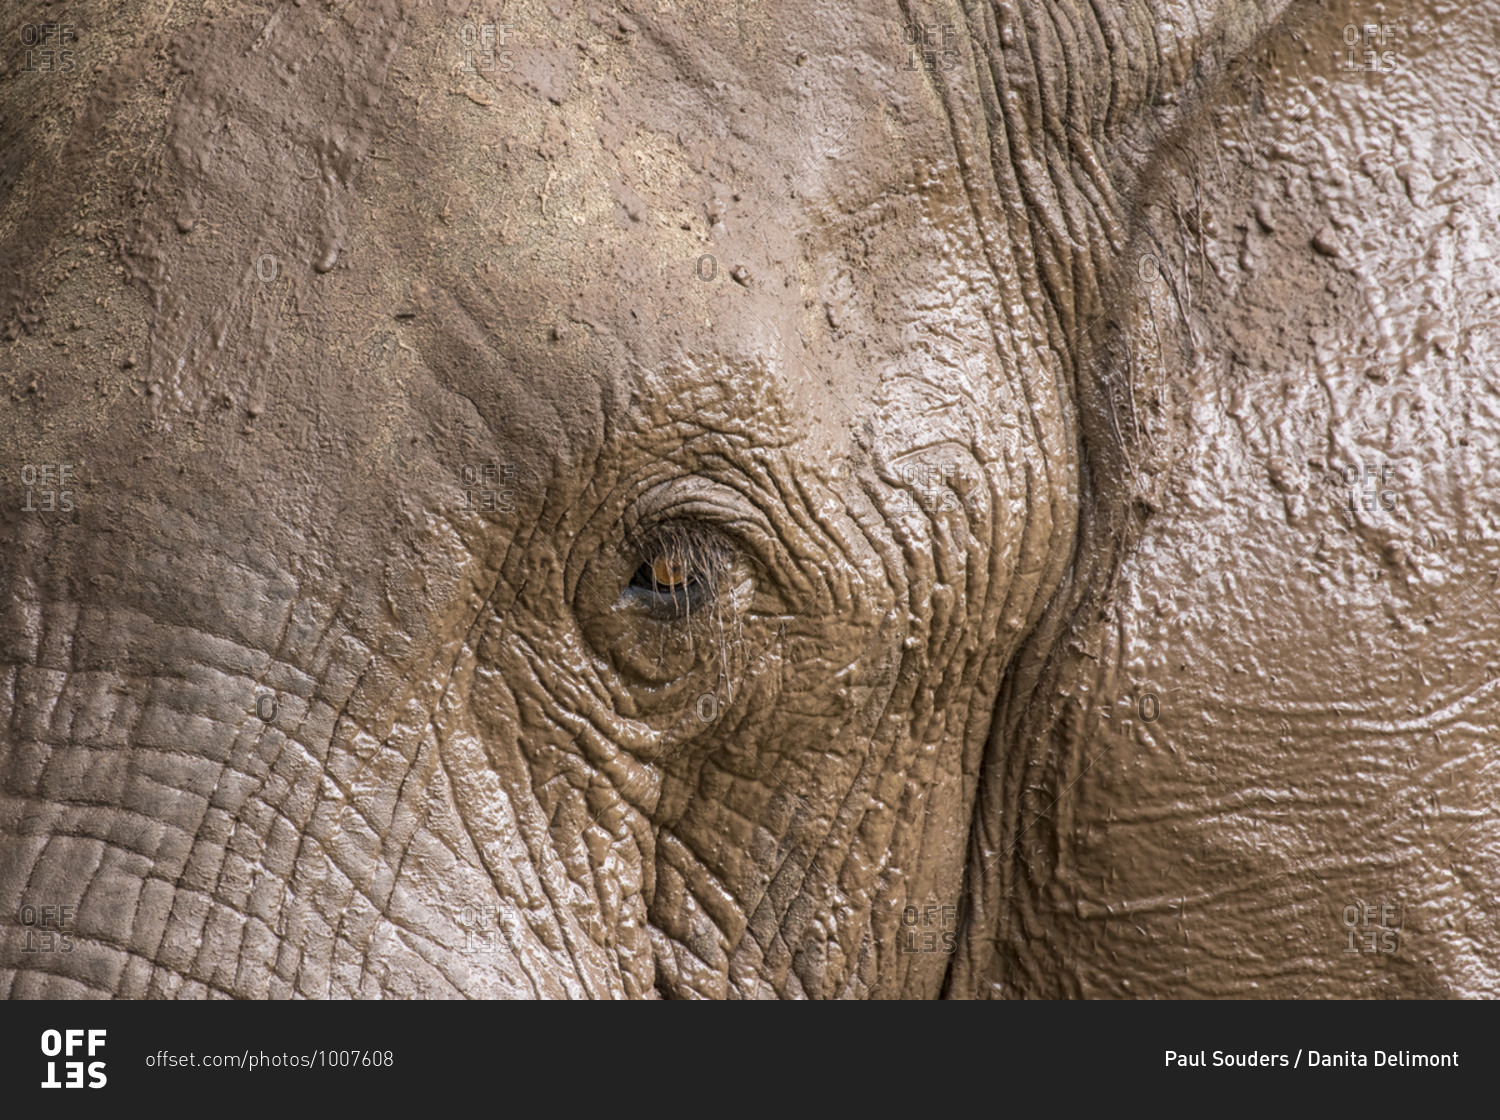 Africa, Botswana, Kasane, Close-up of mud-covered Elephant (Loxodonta africana) drinking and playing along Chobe River near Kasane